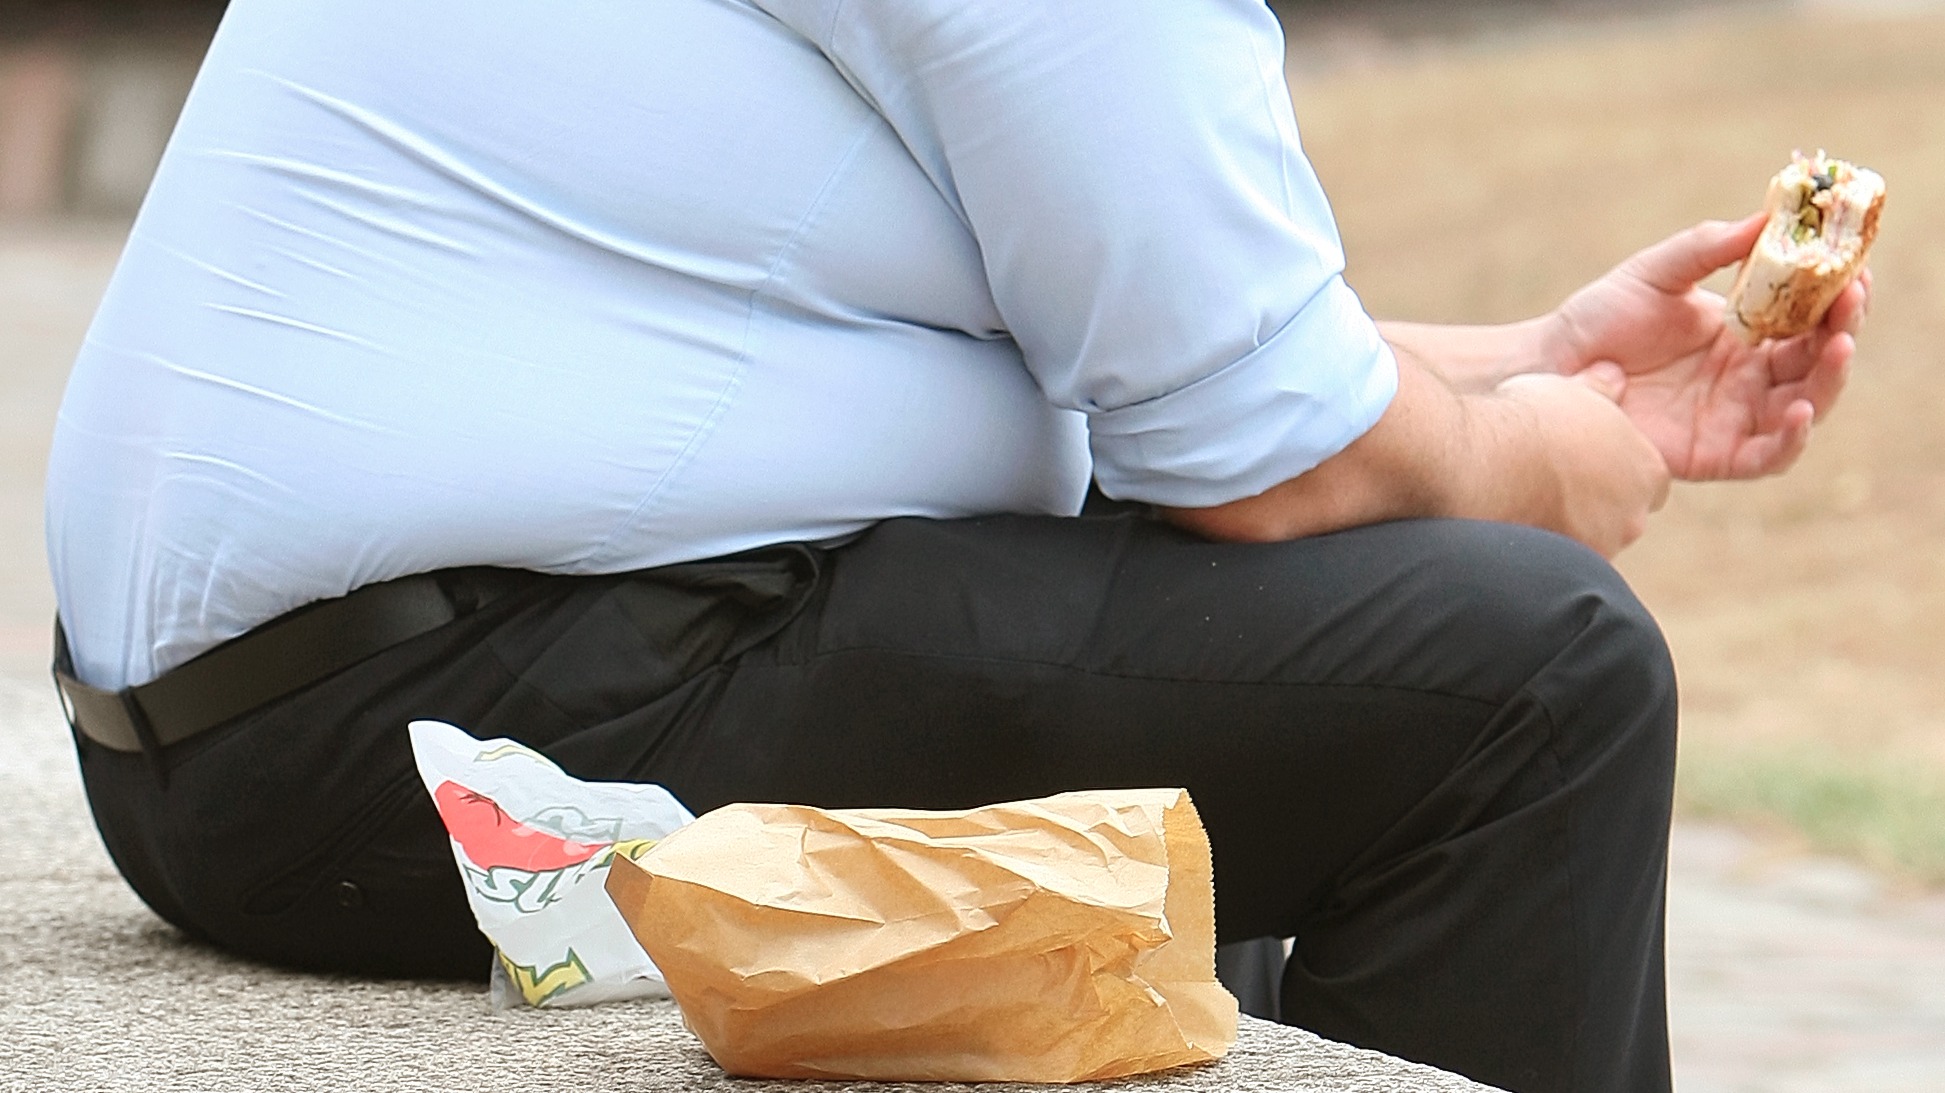 అధిక బరువు మరియు దాని ఇంటి నివారణల సమస్యలు – Problems of overweight and its home remedies